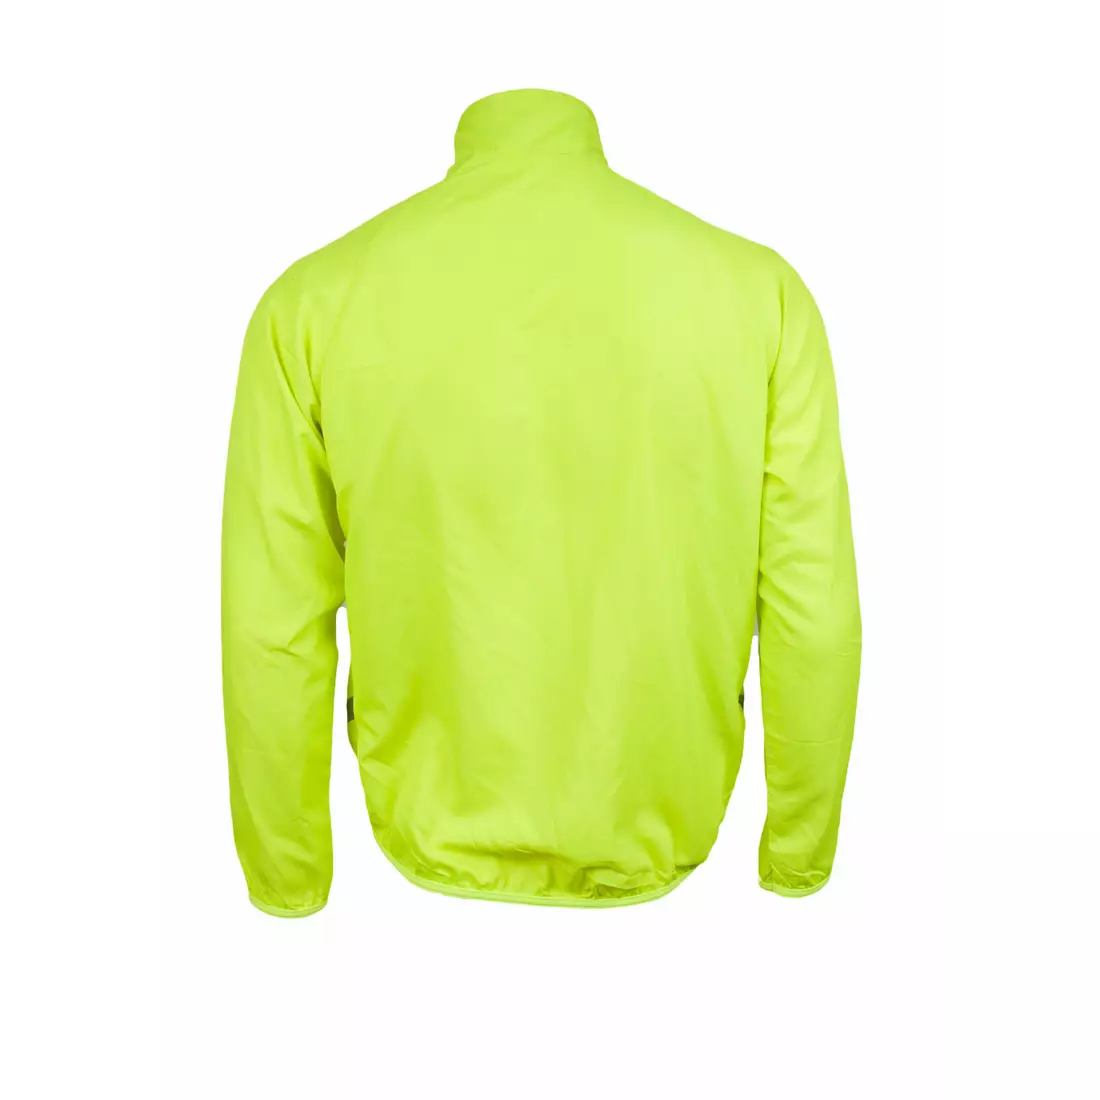 DEKO SOFT men's, lightweight bicycle windbreaker, fluorine yellow